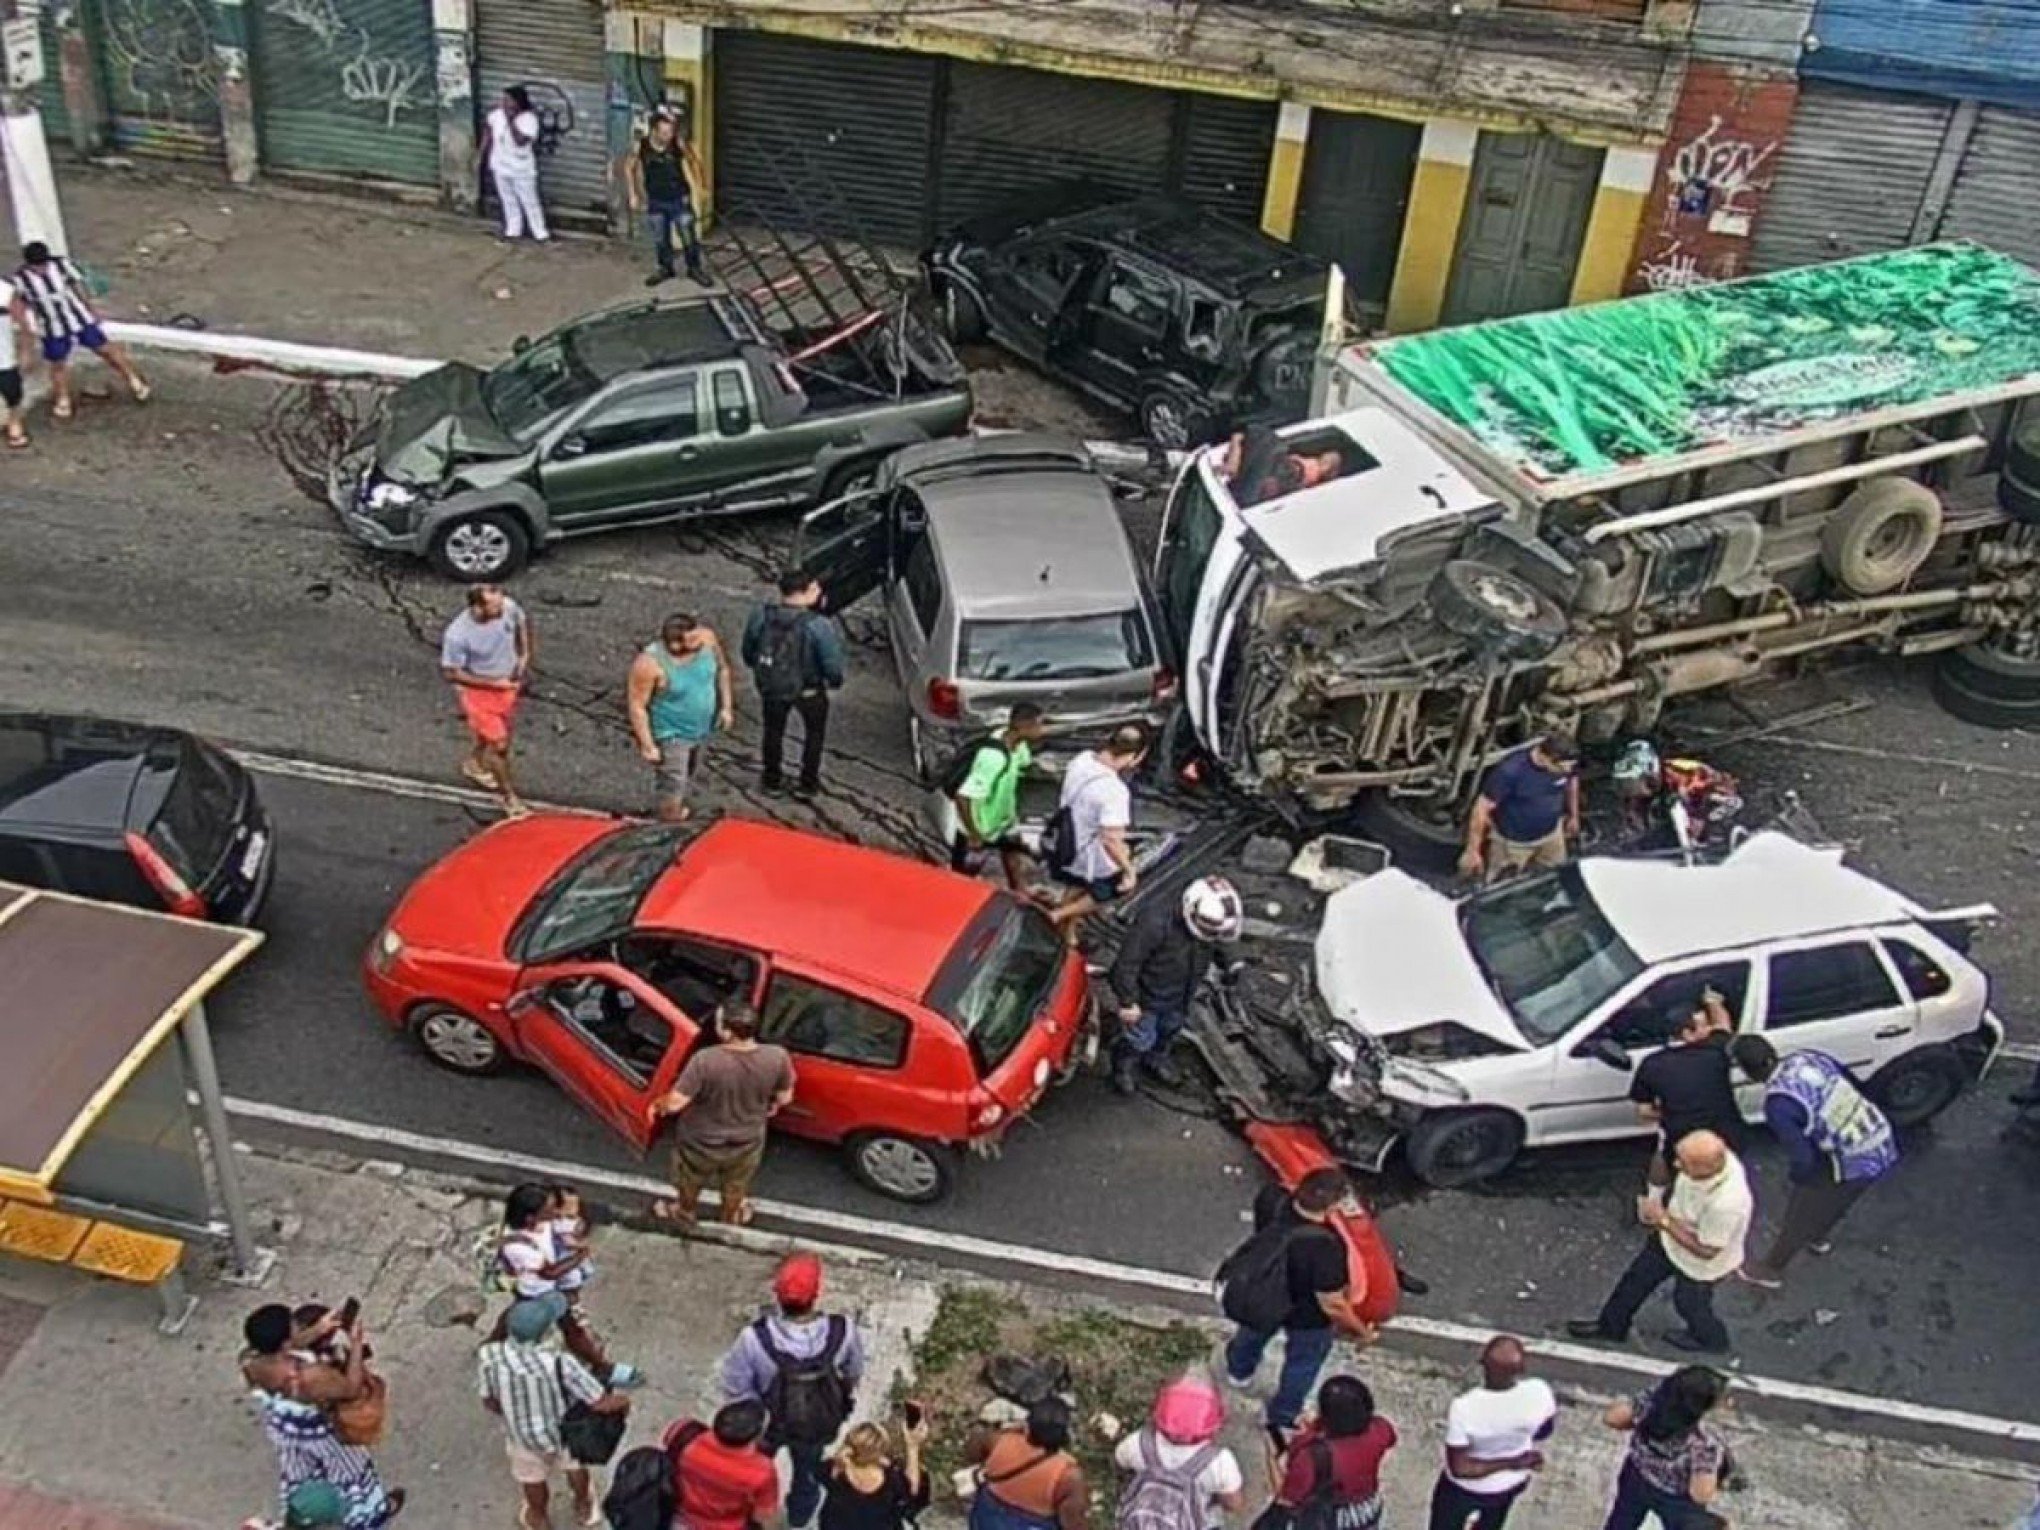 ACIDENTE DE TRÂNSITO: Colisão entre 11 veículos deixa 8 feridos em Niterói; veja o que se sabe